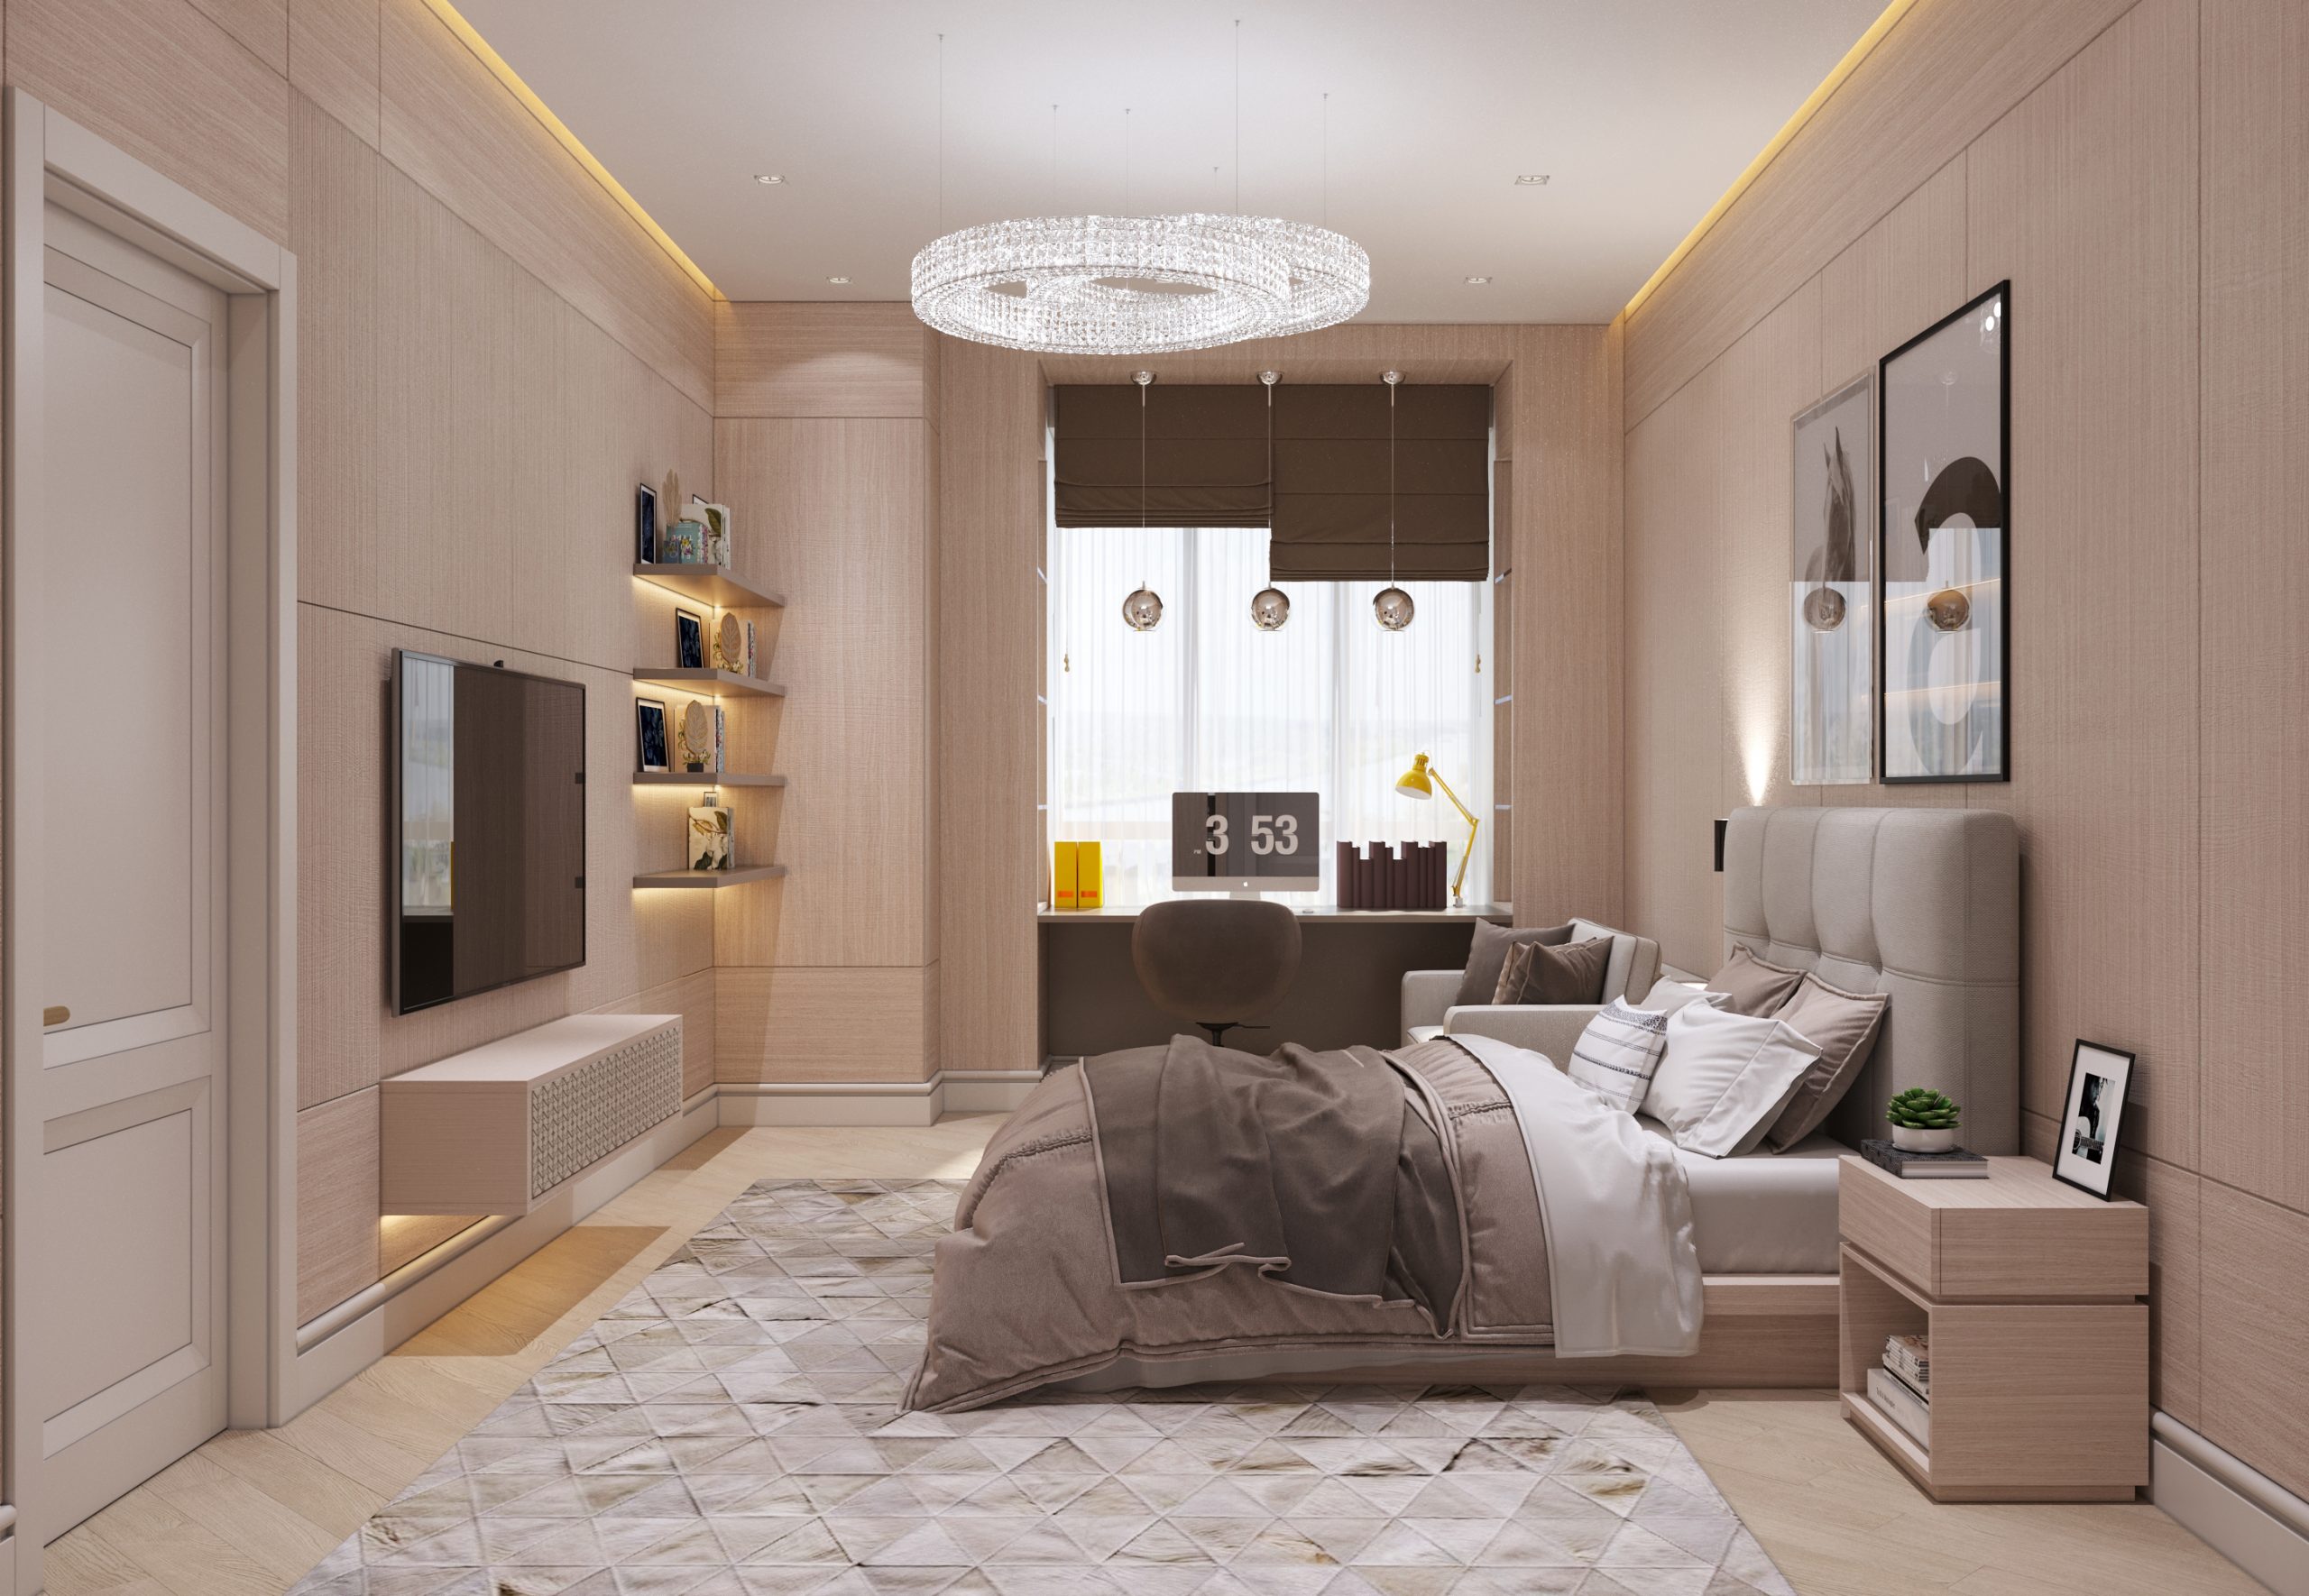 Сучасний трендовий декор в проекті гостьової спальні в інтер'єрі квартири